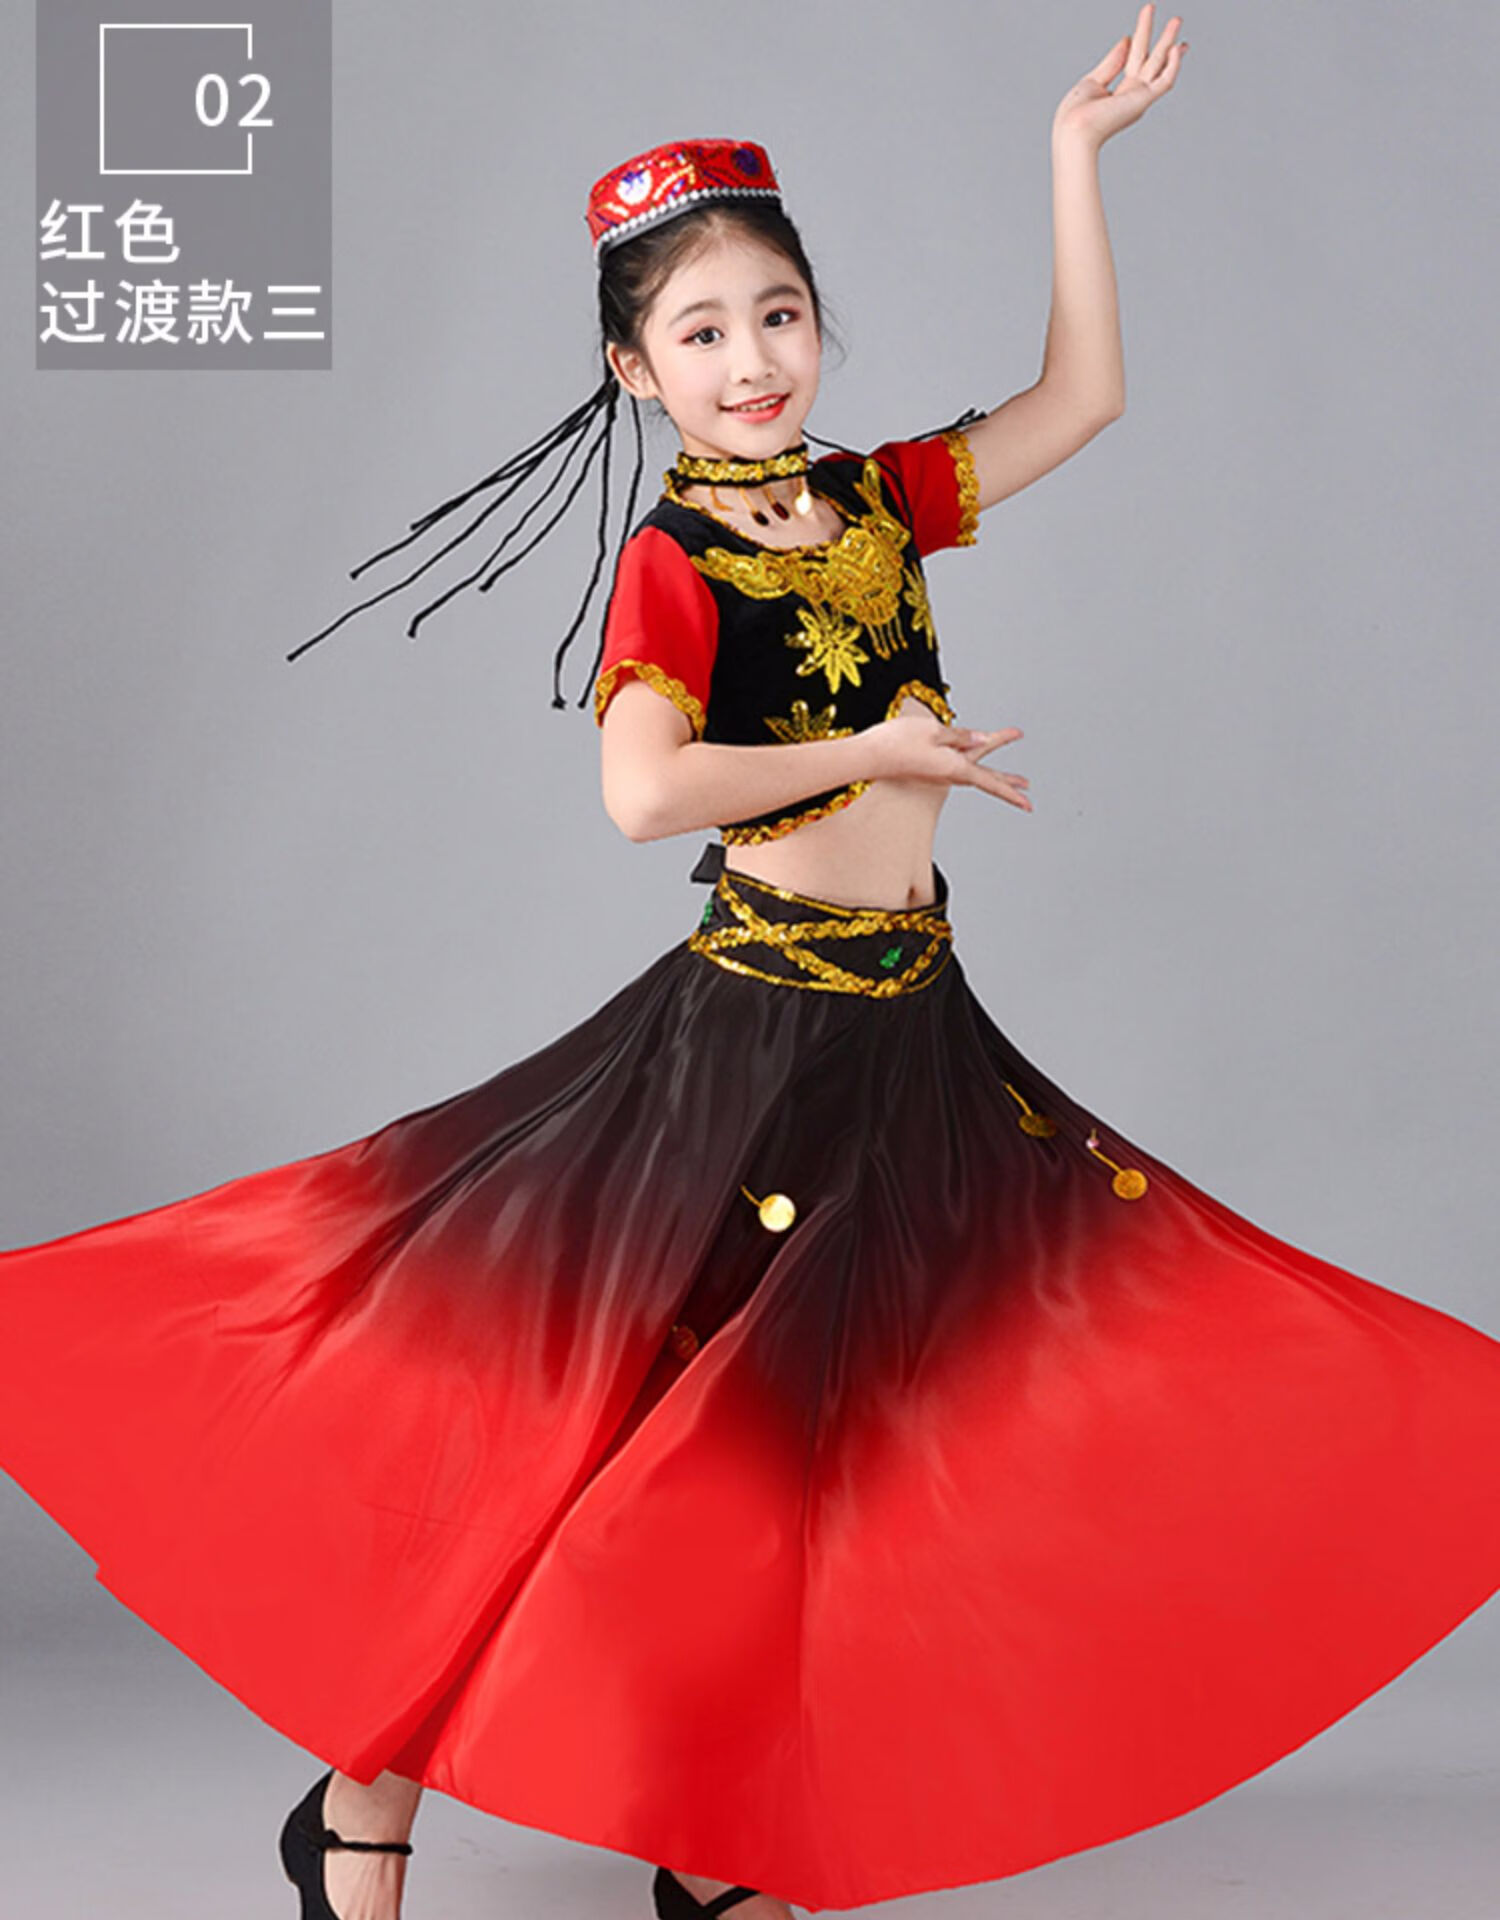 【六一礼物】六一六一儿童新疆舞演出服女童维吾尔族服装哈萨克族少数